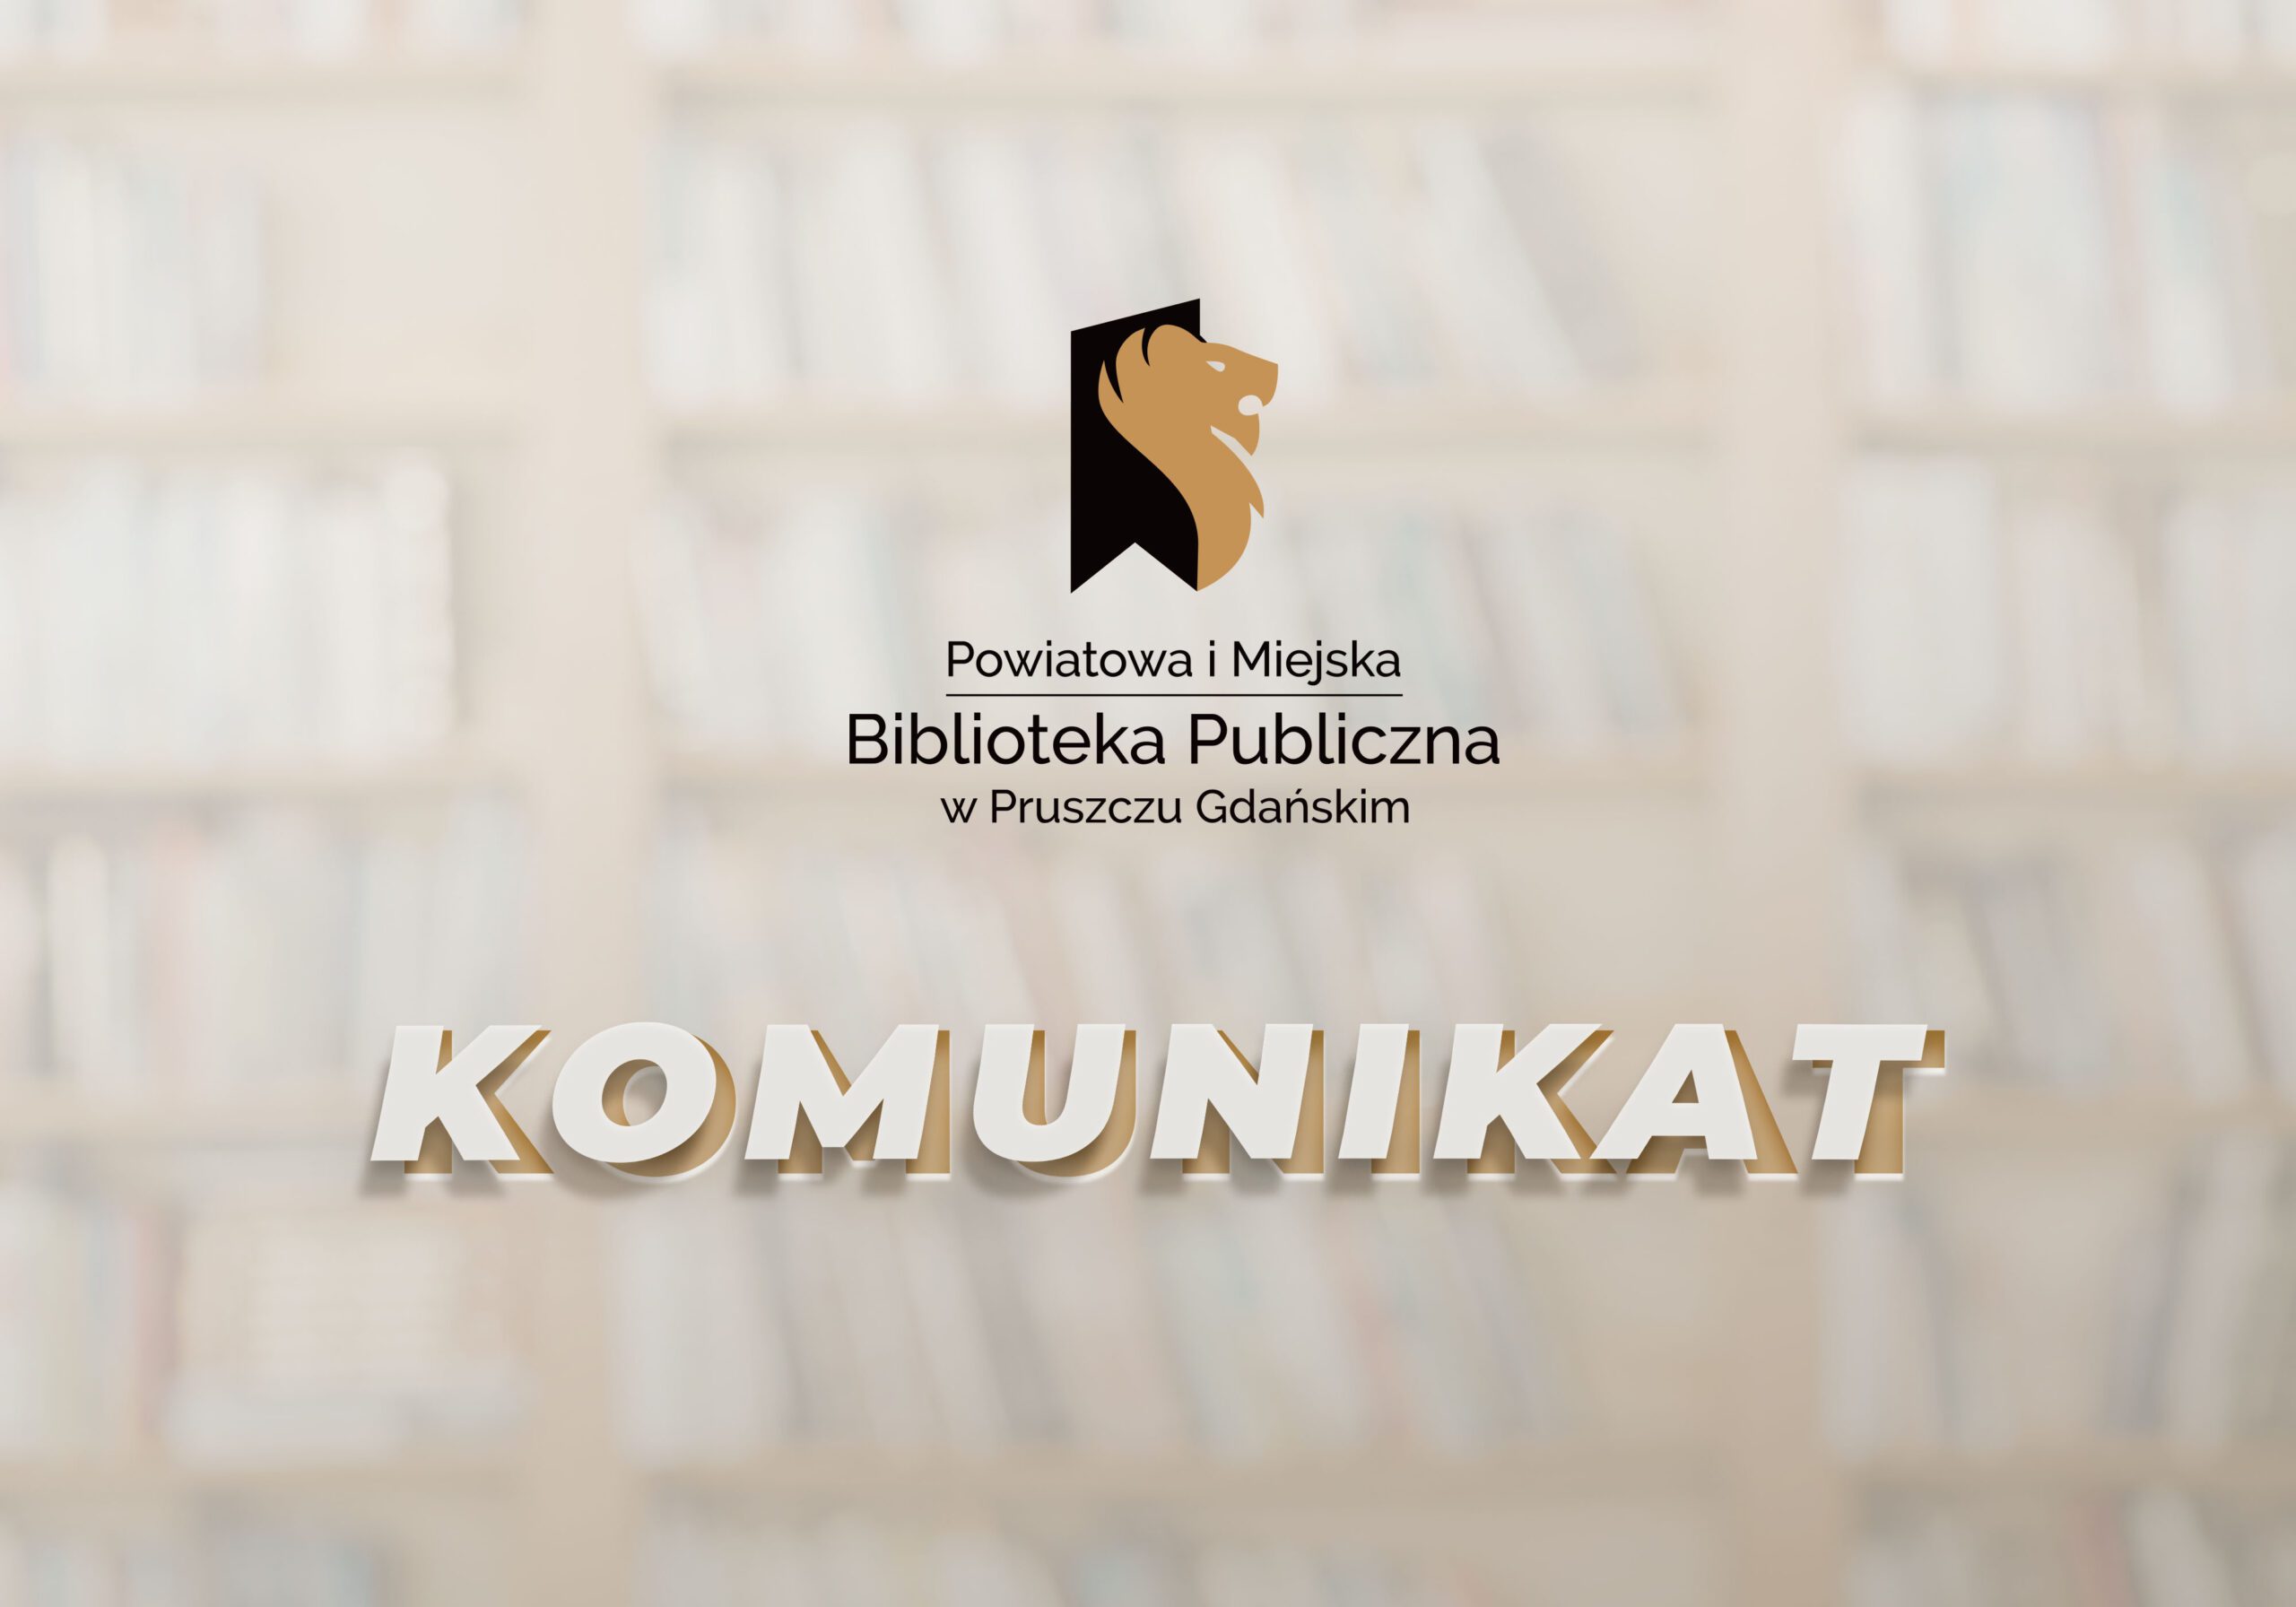 Napis komunikat oraz Logotyp Powiatowej i Miejskiej Biblioteki Publicznej w Pruszczu Gdańskim